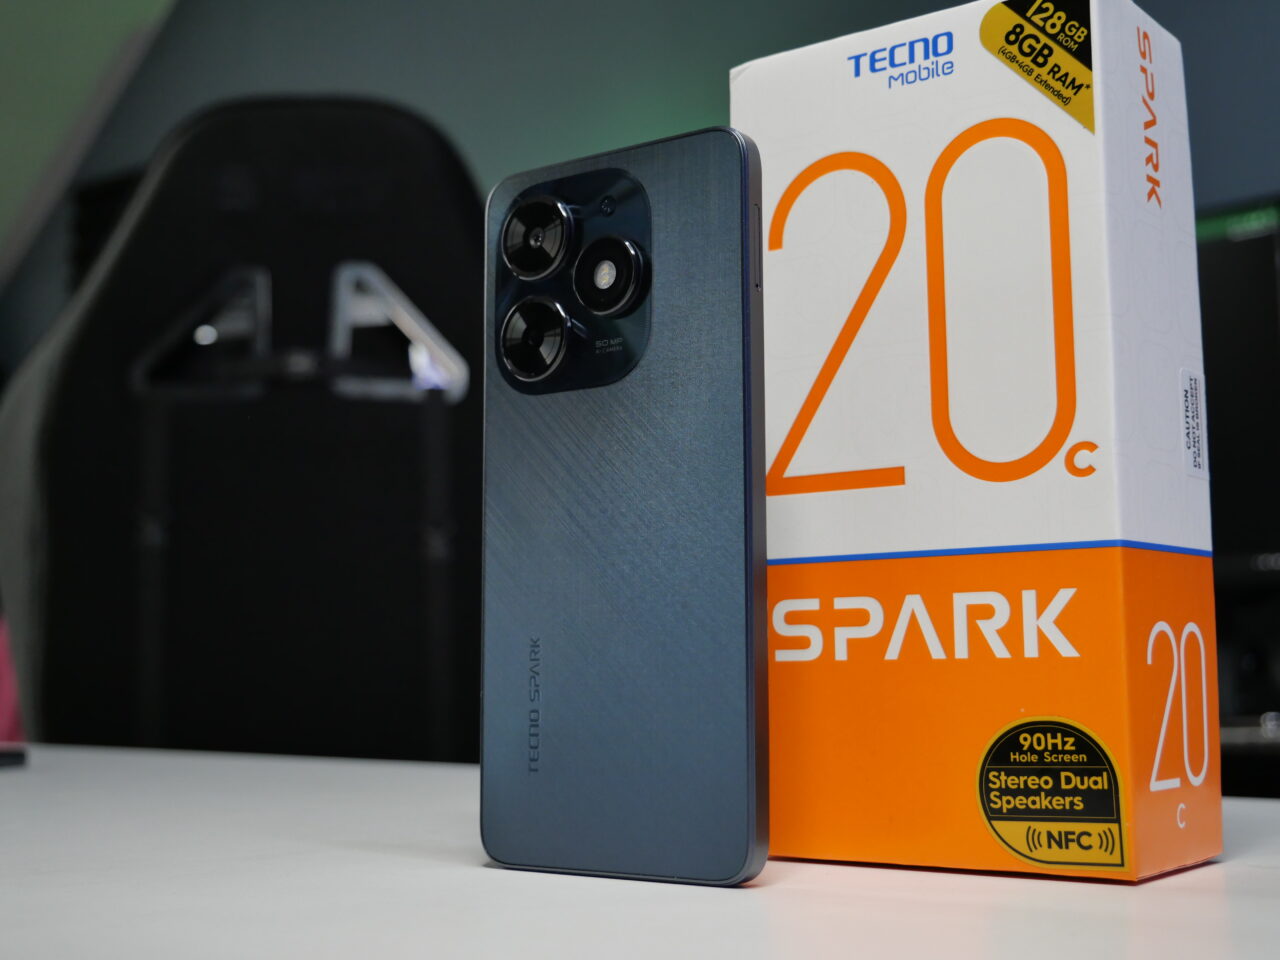 Smartfon Tecno Spark 20 w kolorze niebieskim z tyłu obok pudełka z napisem "SPARK 20".